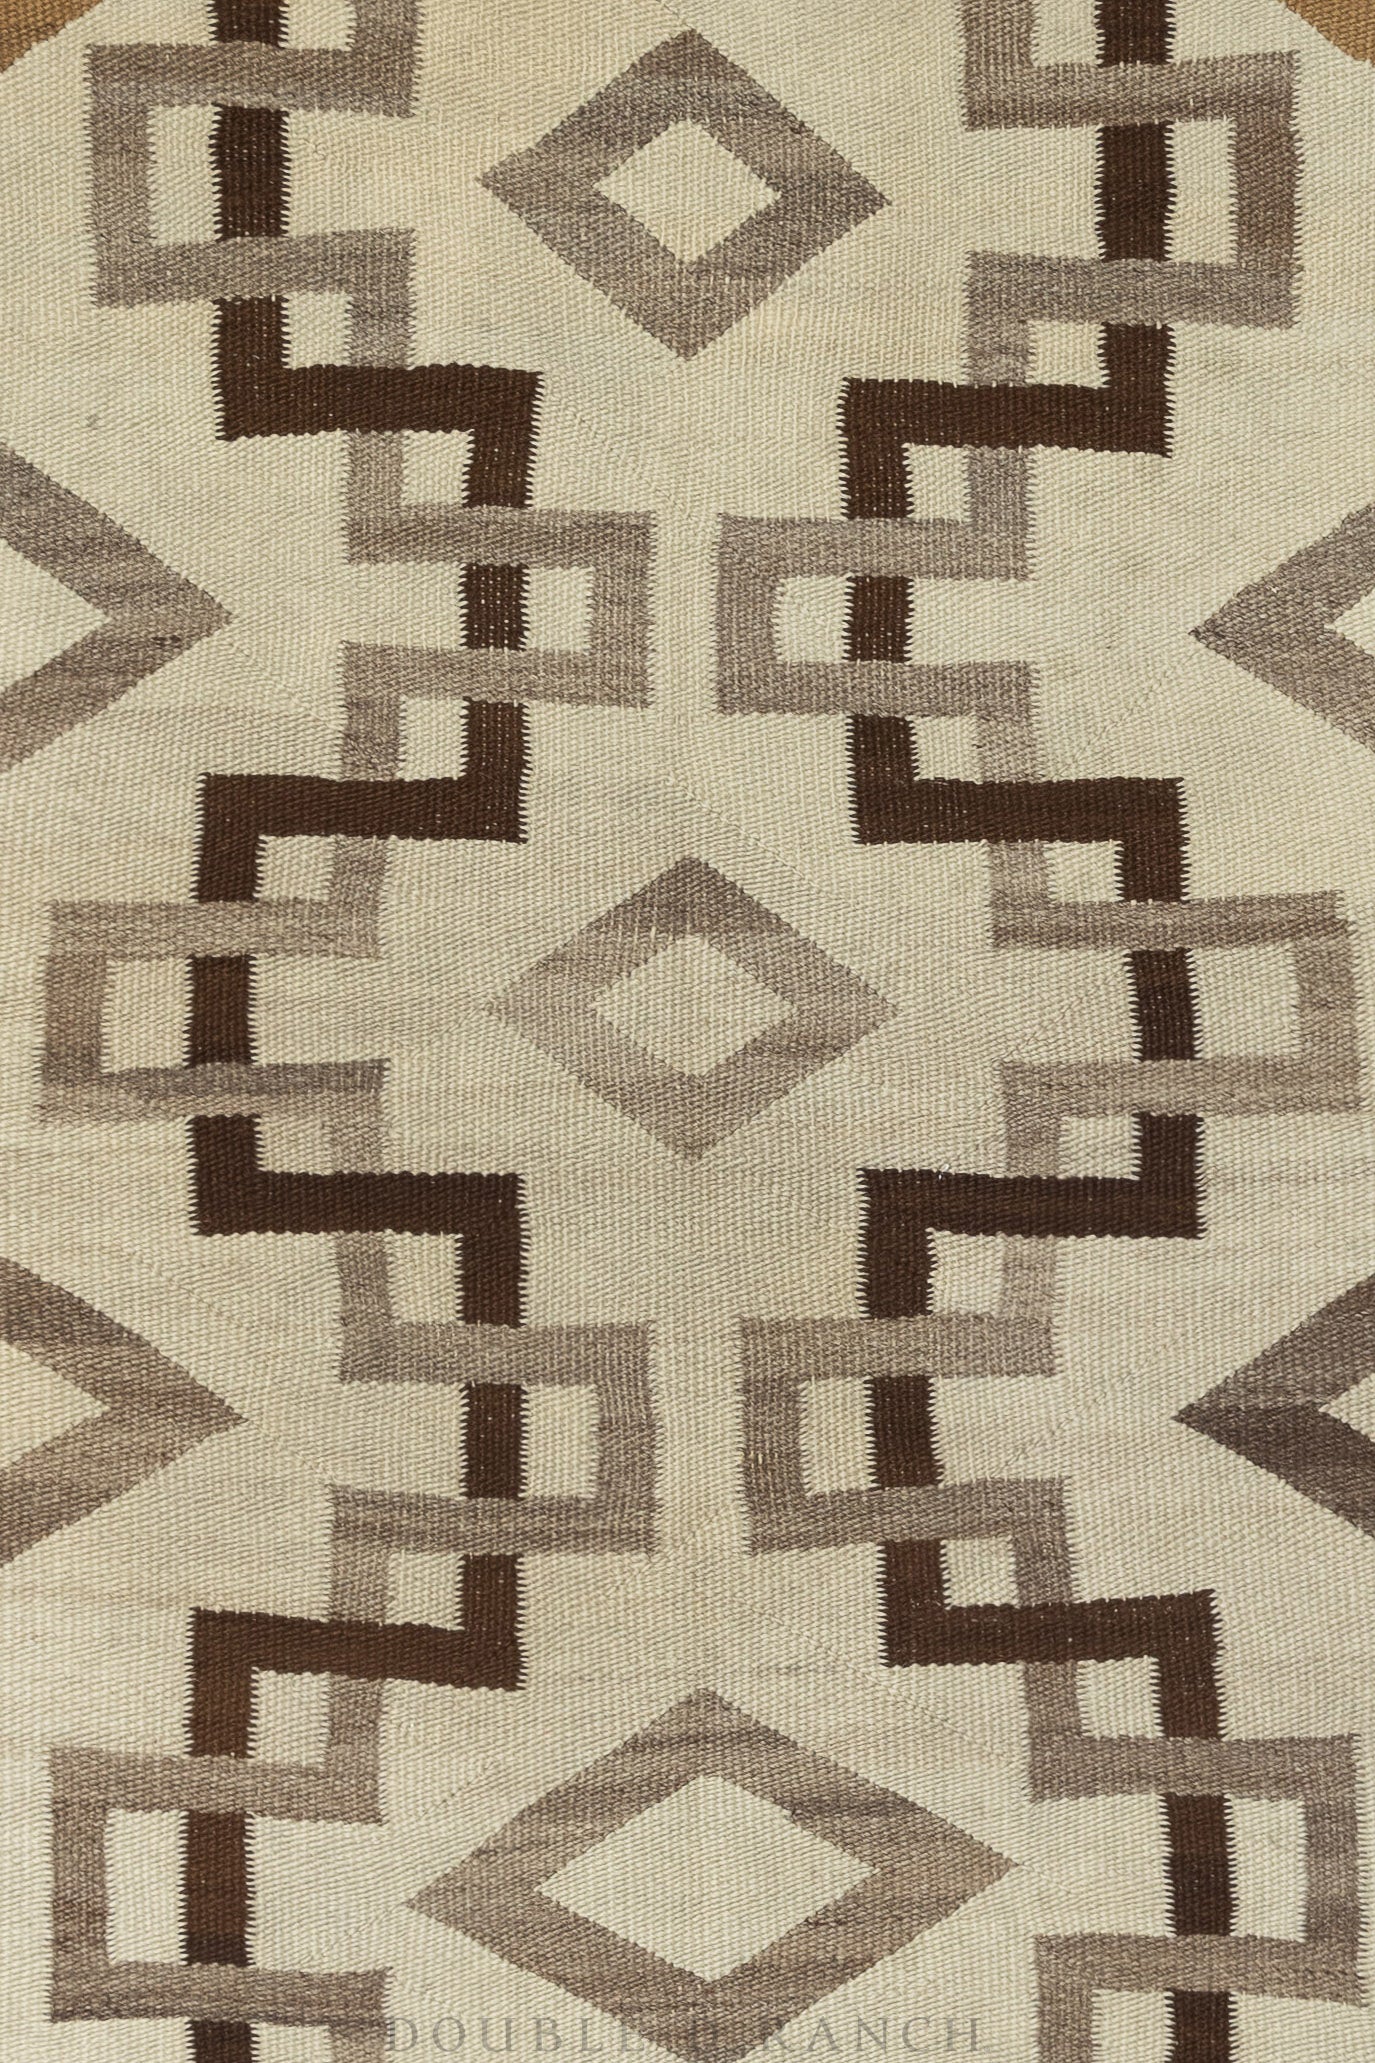 Home, Textile, Rug, Navajo, Vintage, 113